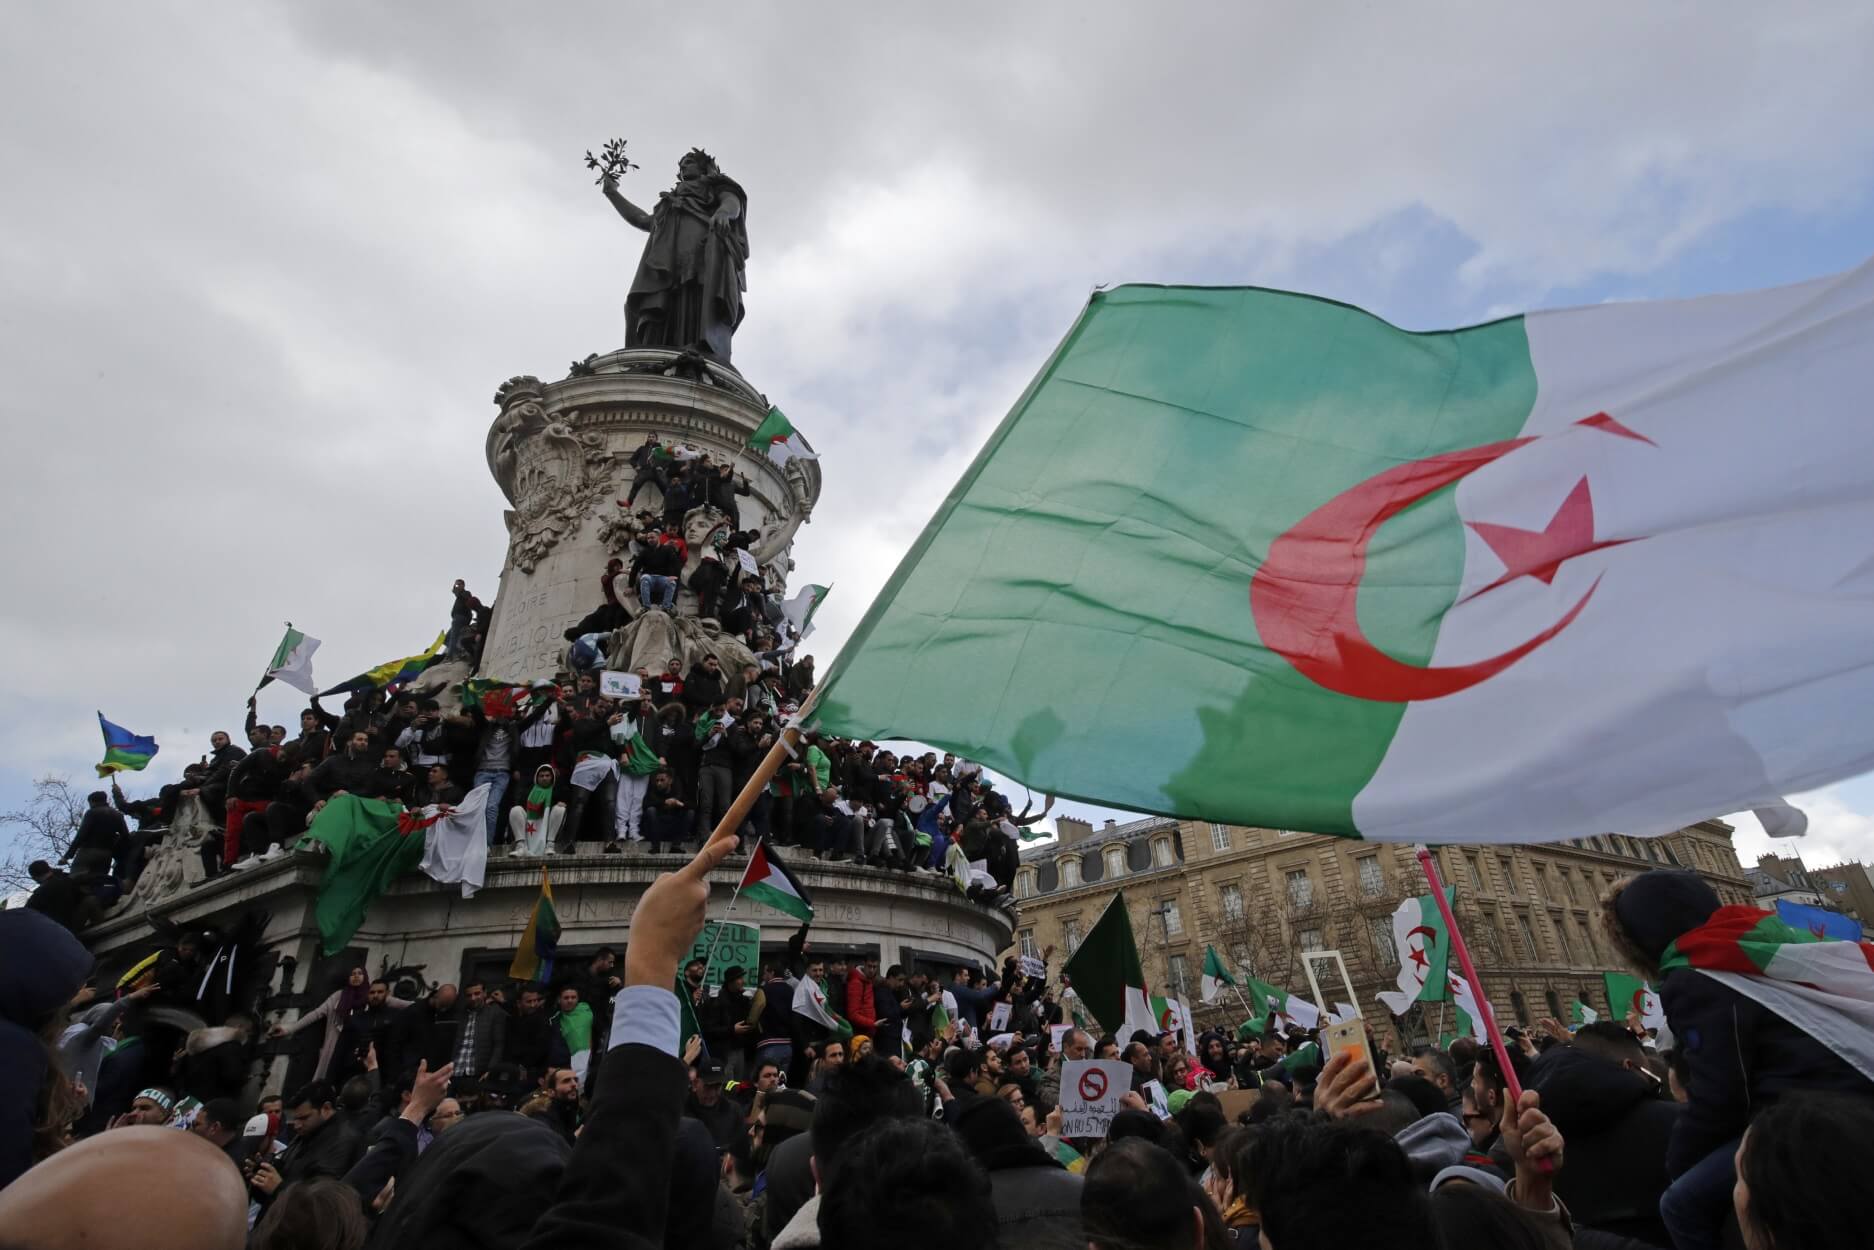 Αλγερία: “Ε, Μπουτεφλίκα, δεν έχει 5η θητεία” φώναξαν χιλιάδες μαθητές στον πρόεδρο που επέστρεψε από Ελβετία! – Video